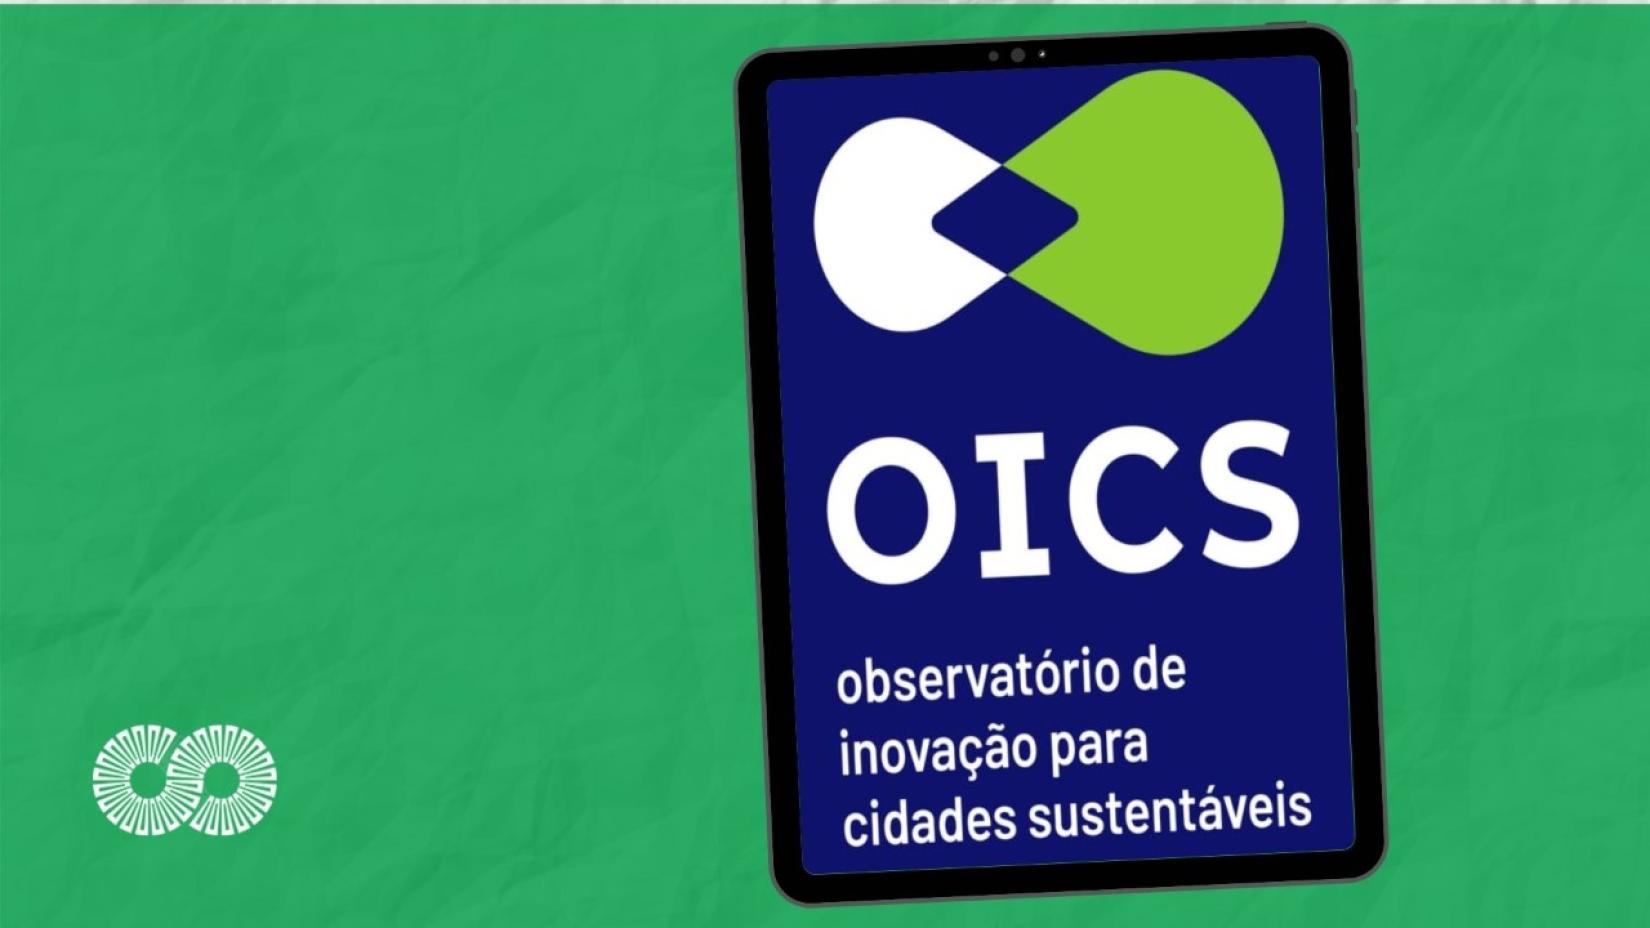 O Oics é em uma plataforma virtual que visa mapear e divulgar soluções urbanas inovadoras, contextualizadas ao território nacional.